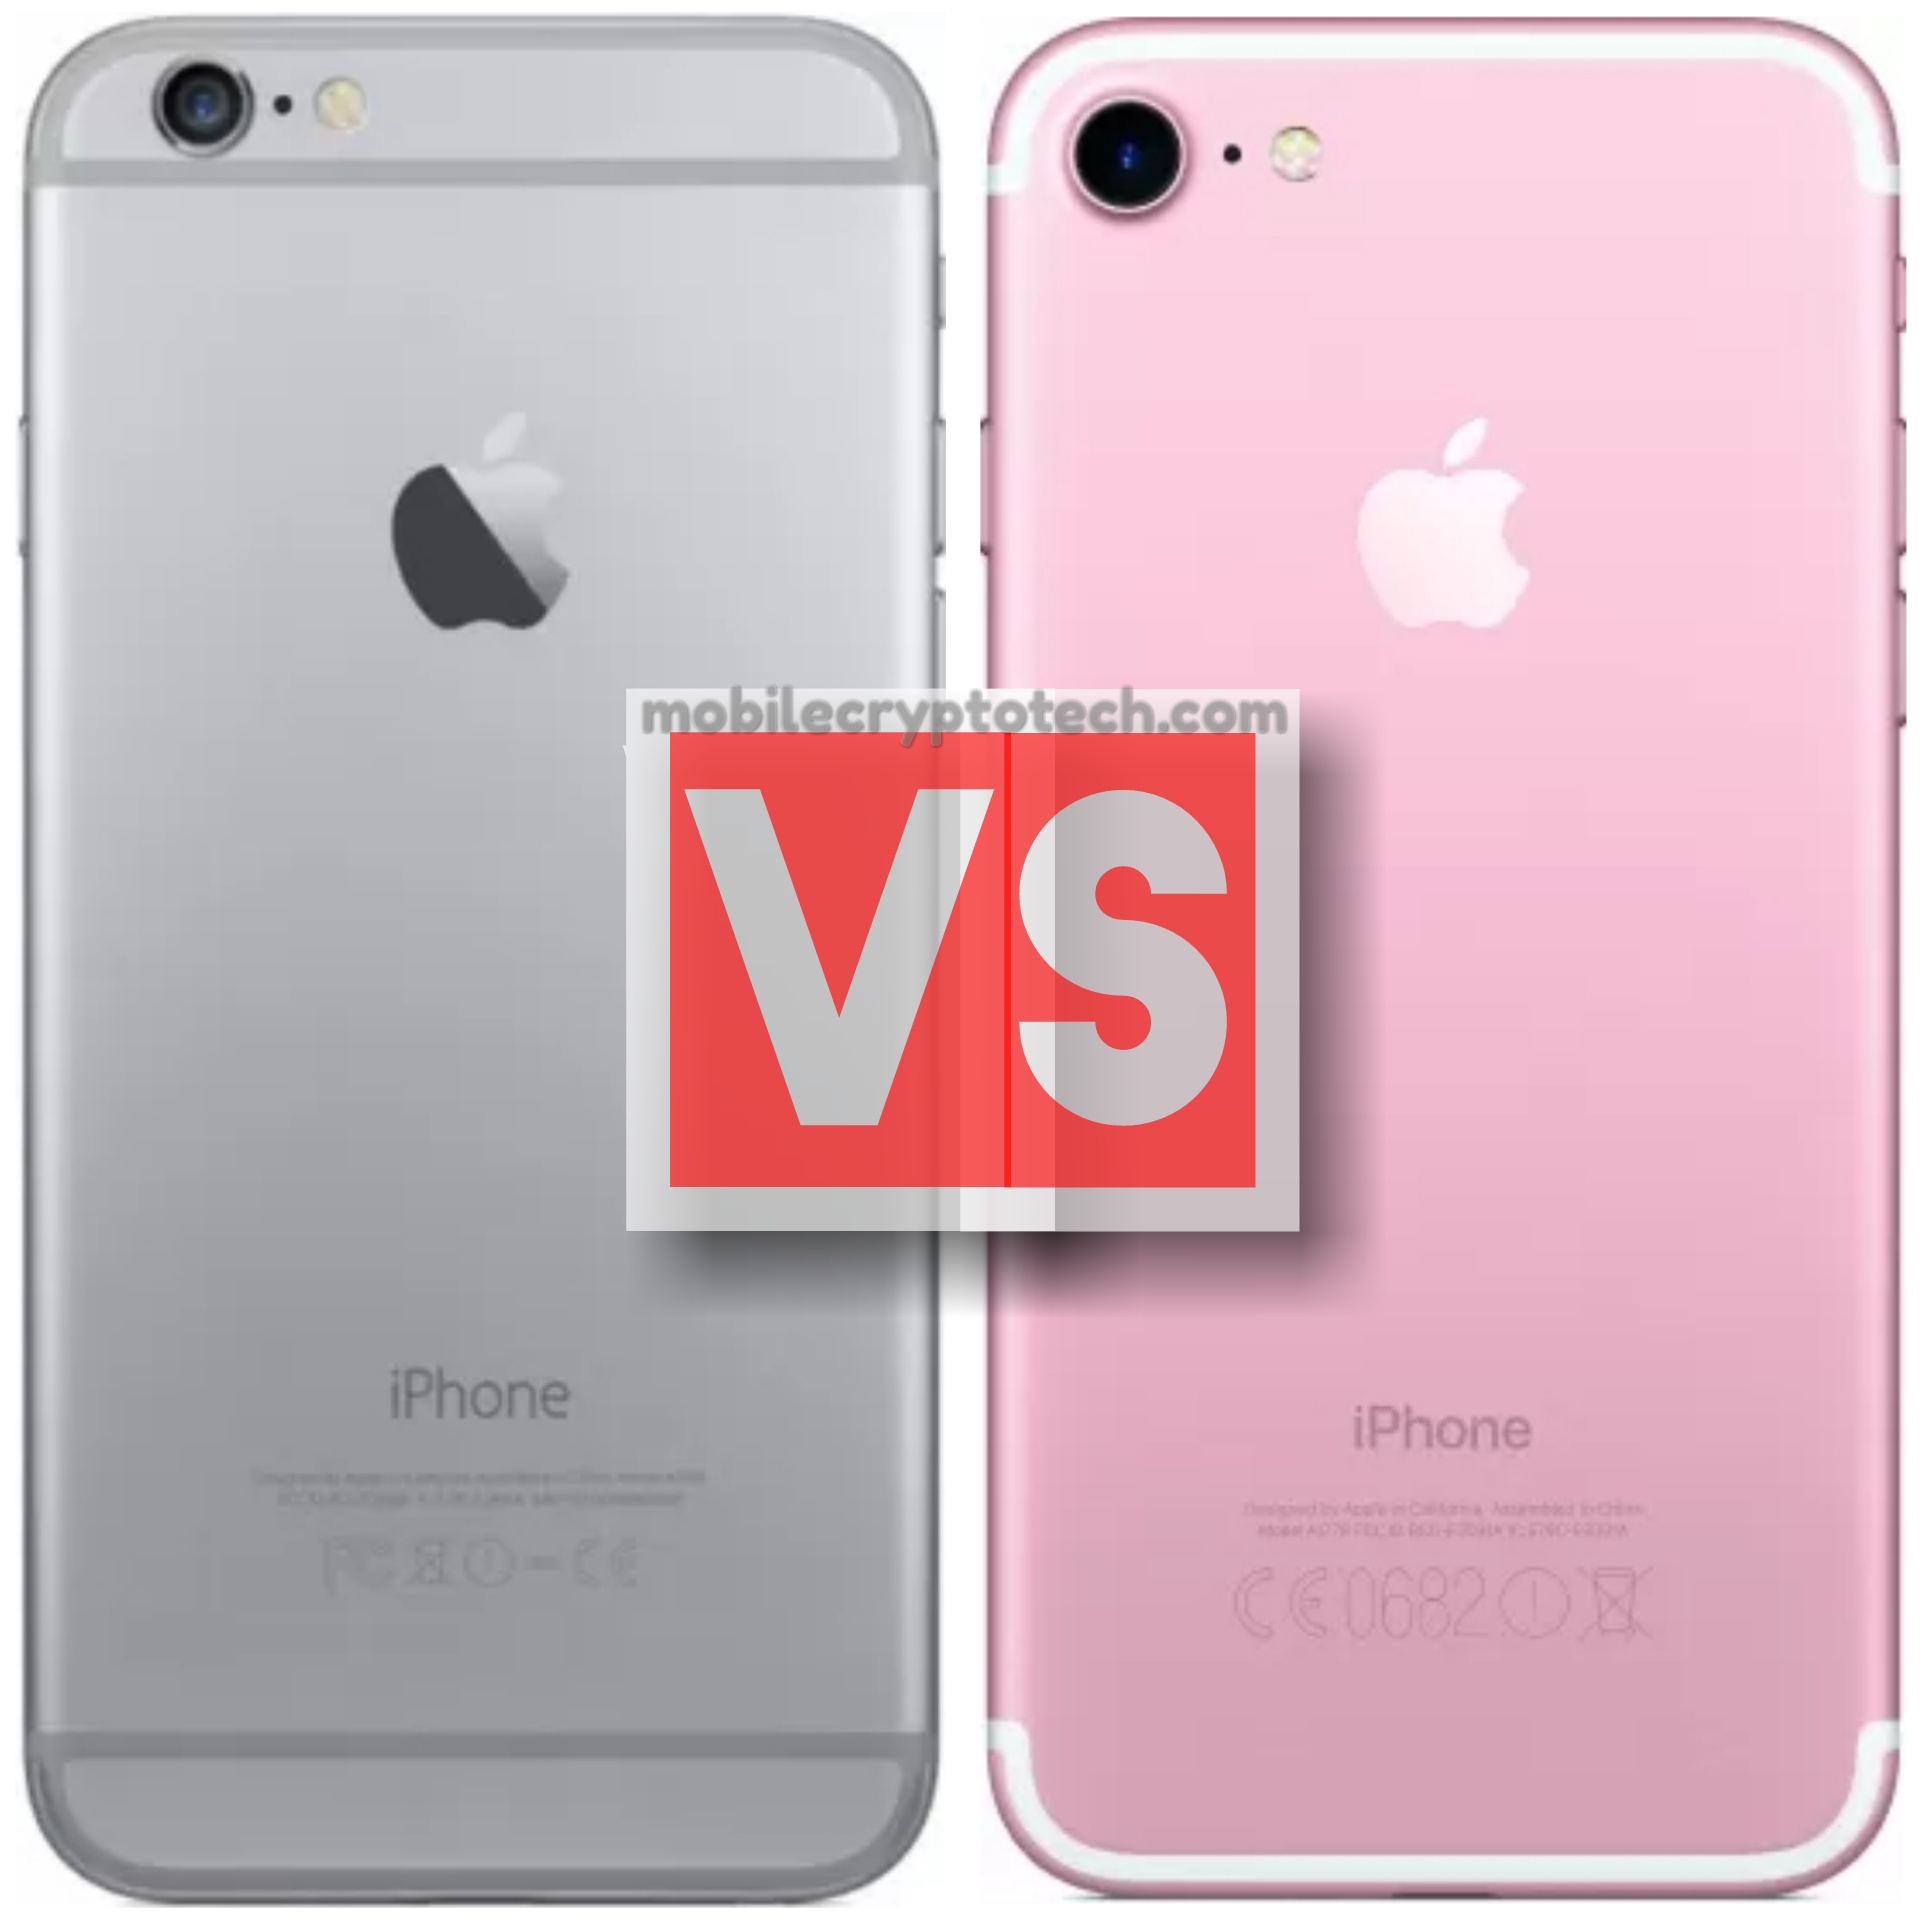 Apple iPhone 6 Plus Vs iPhone 7